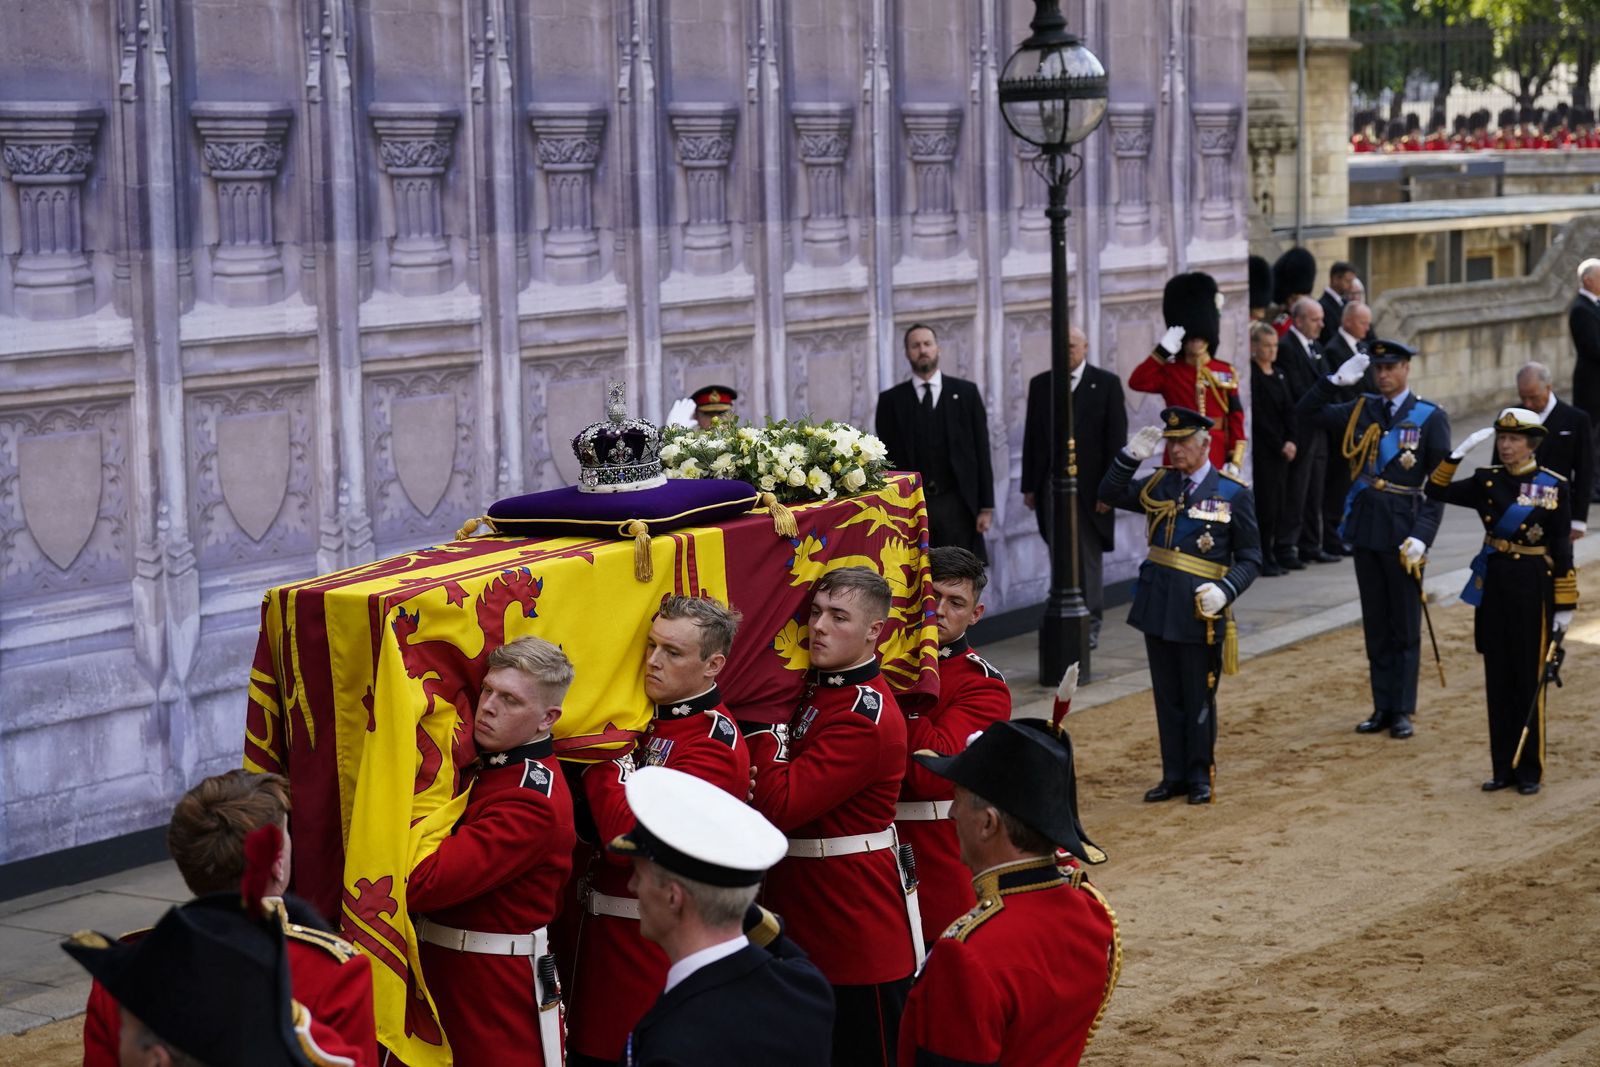 جنود من فرق مشاة الجيش البريطاني يحملون نعش الملكة الراحلة إليزابيث الثانية أثناء إدخاله إلى قصر ويستمنستر بلندن- 14 سبتمبر 2022 - AFP